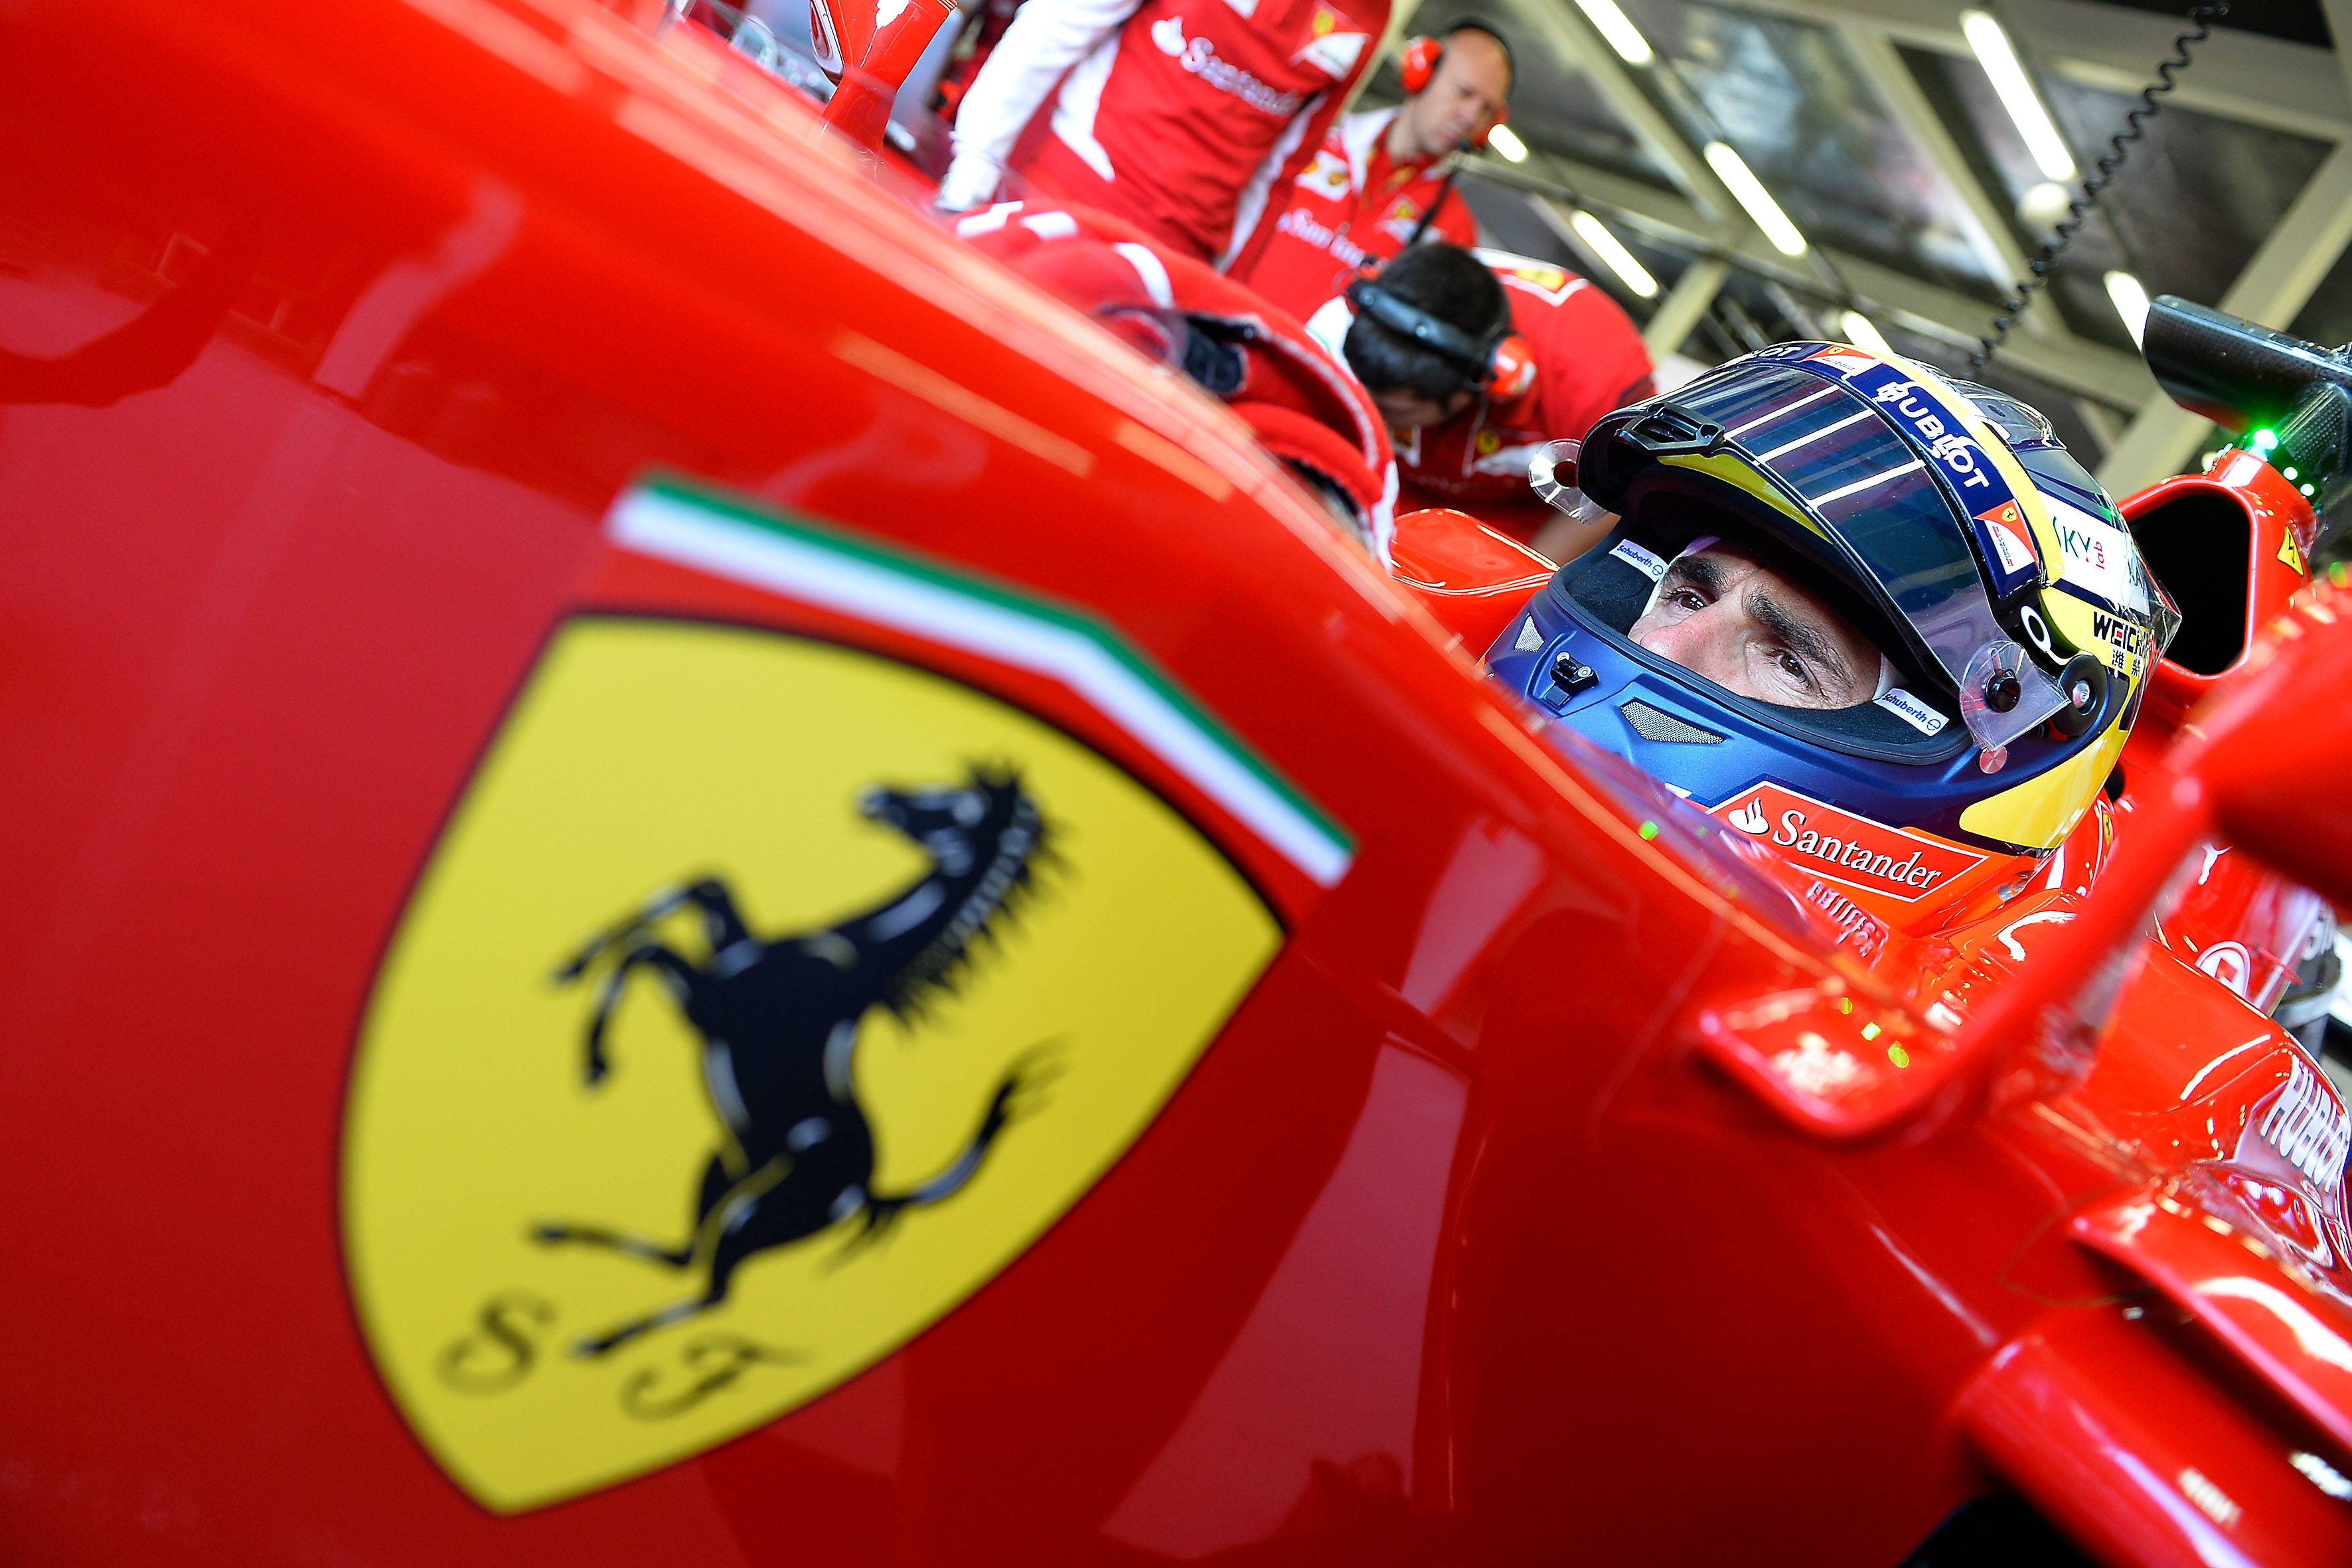  La Ferrari al GP di Germania, De La Rosa: “Nessuno vuole gettare la spugna” – VIDEO